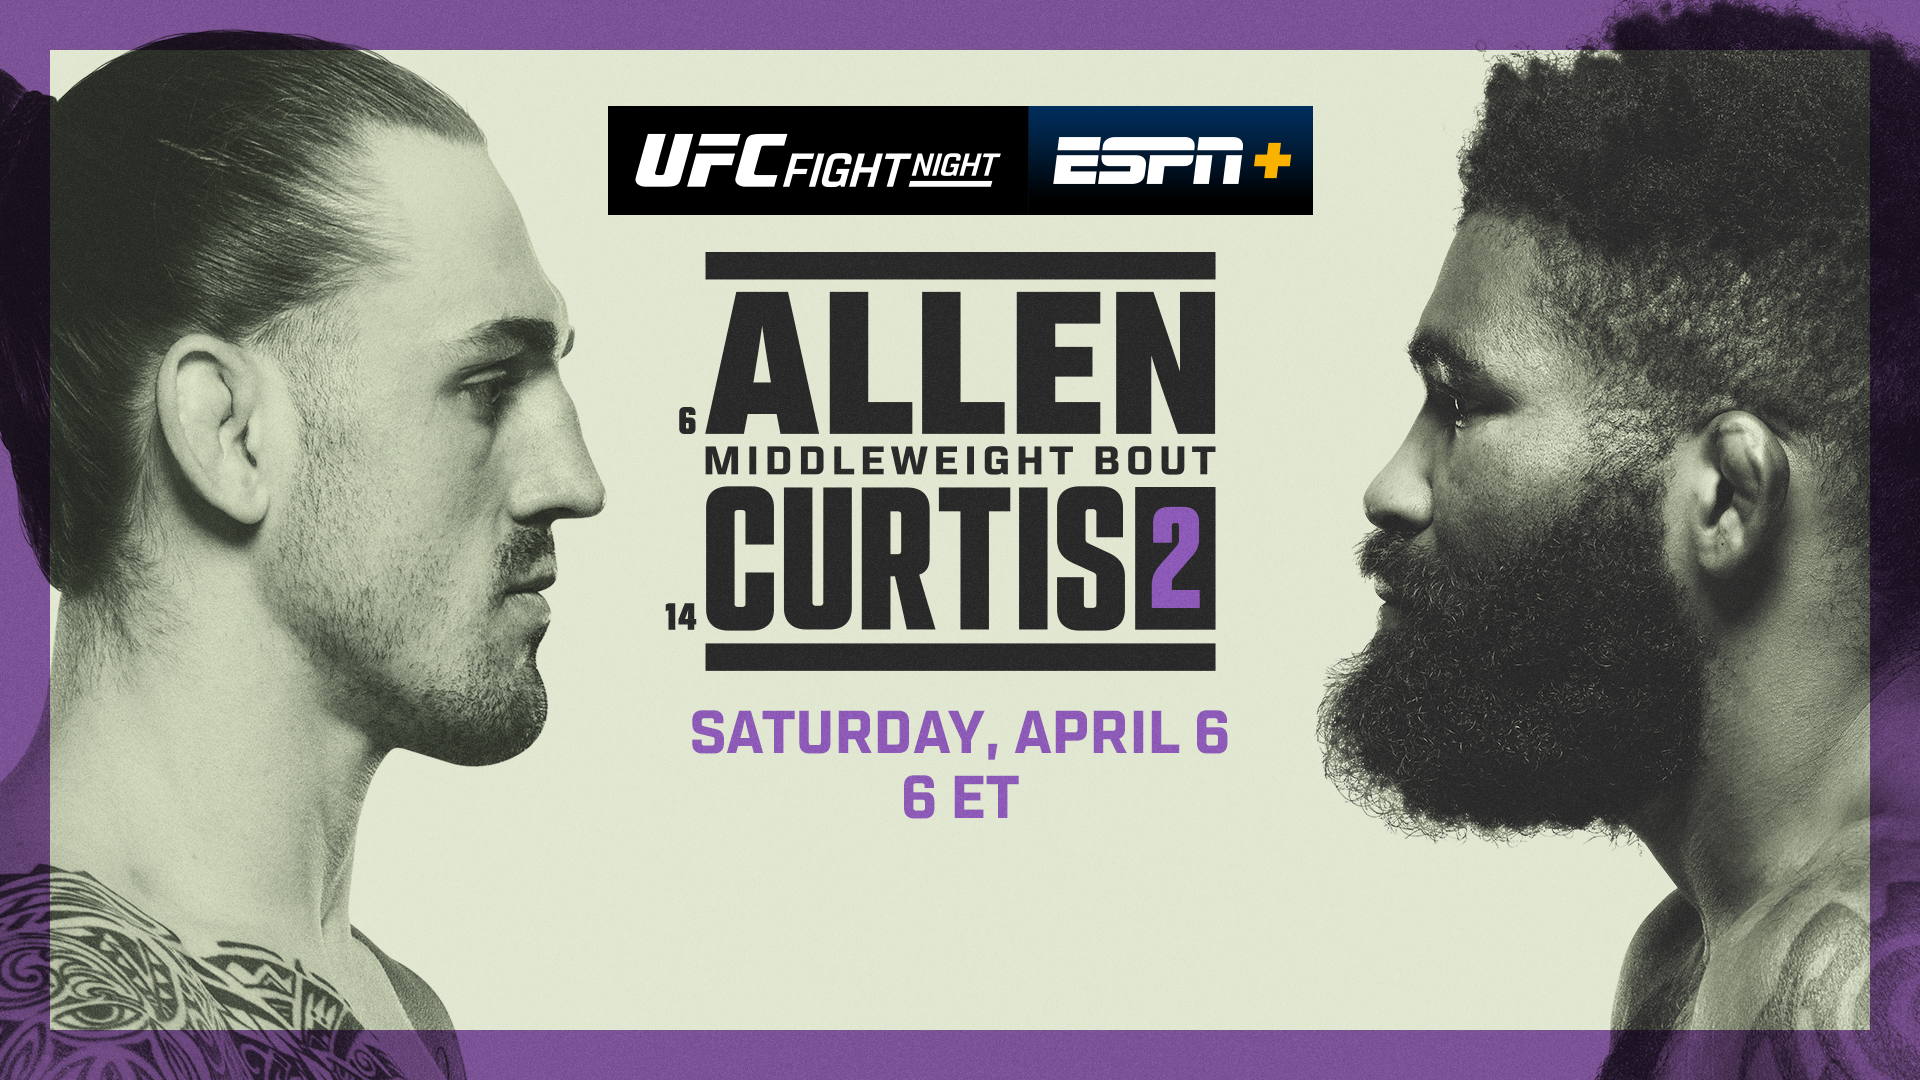 UFC Fight Night: Allen vs Curtis 2